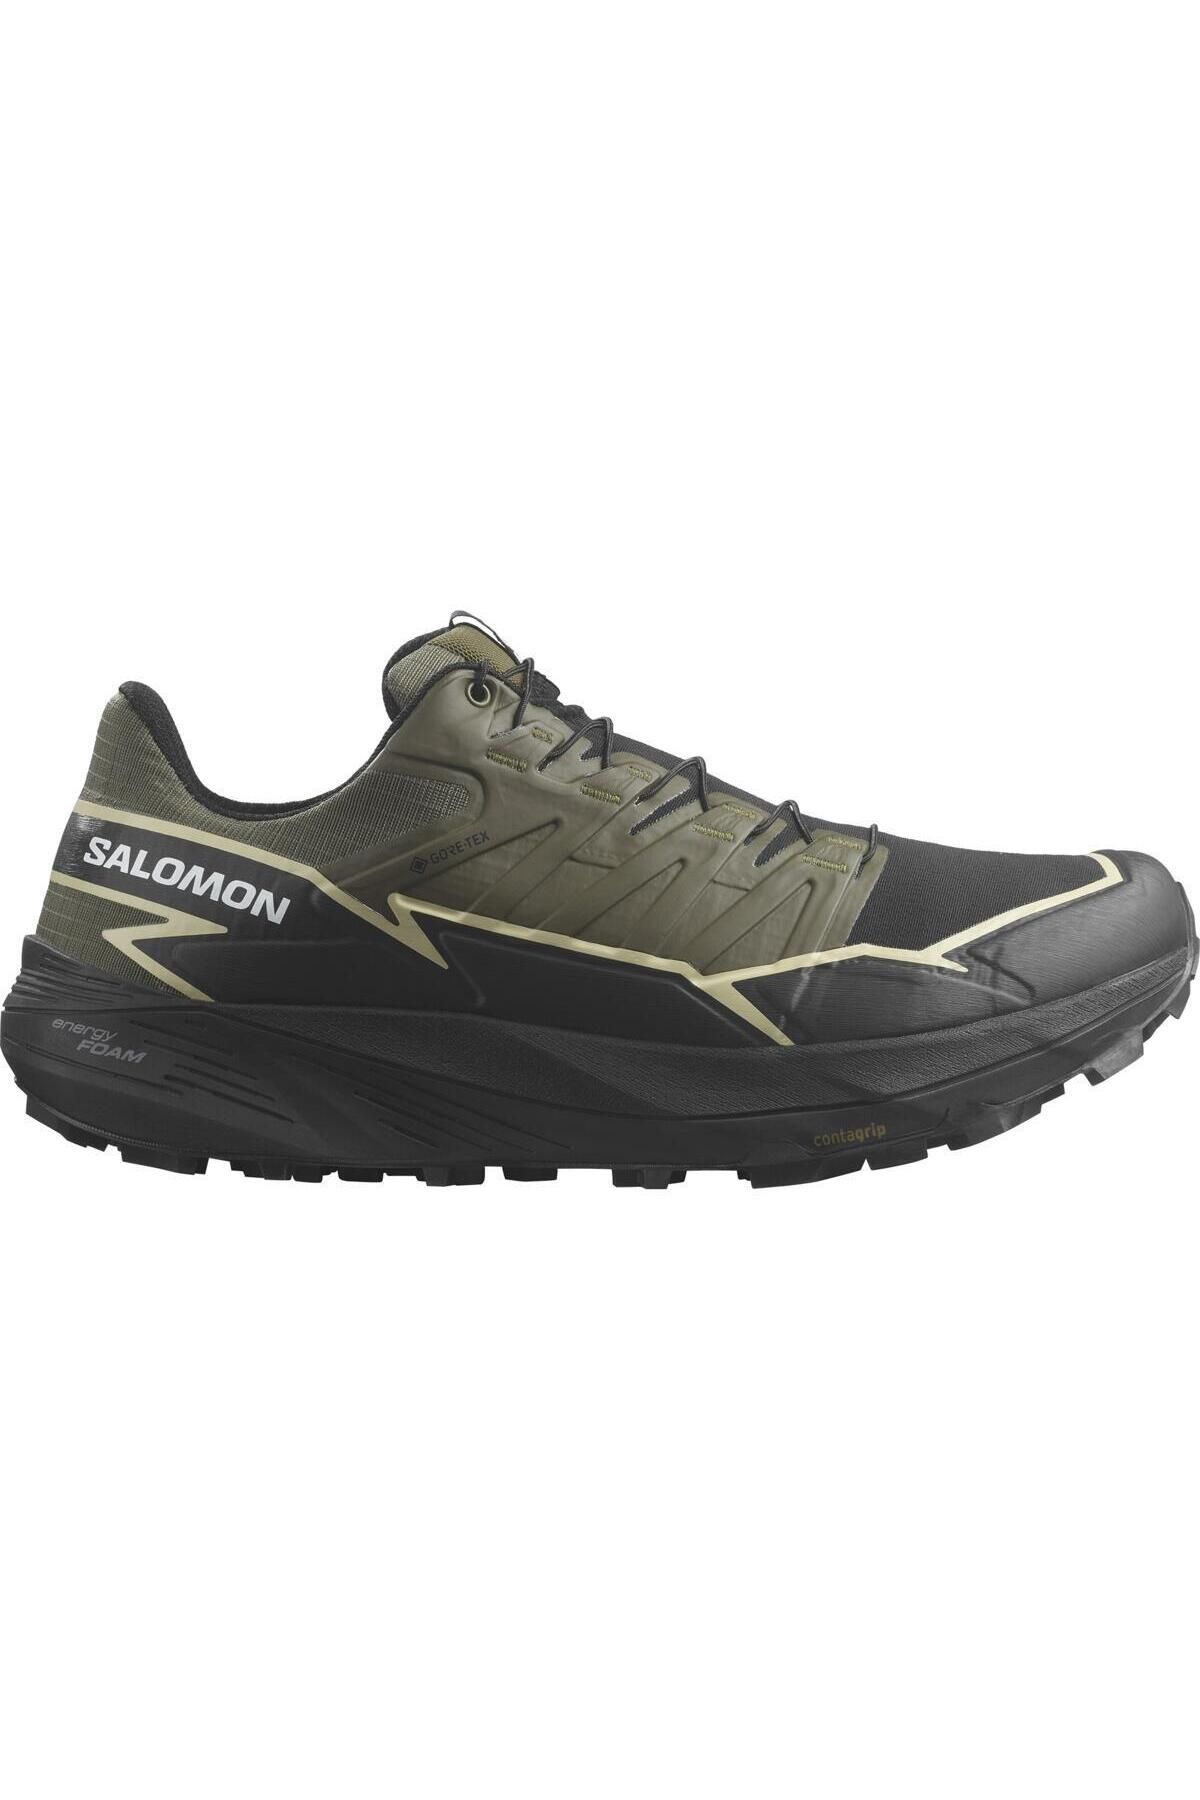 Salomon L47383400 Thundercross Gtx Erkek Koşu Ayakkabısı